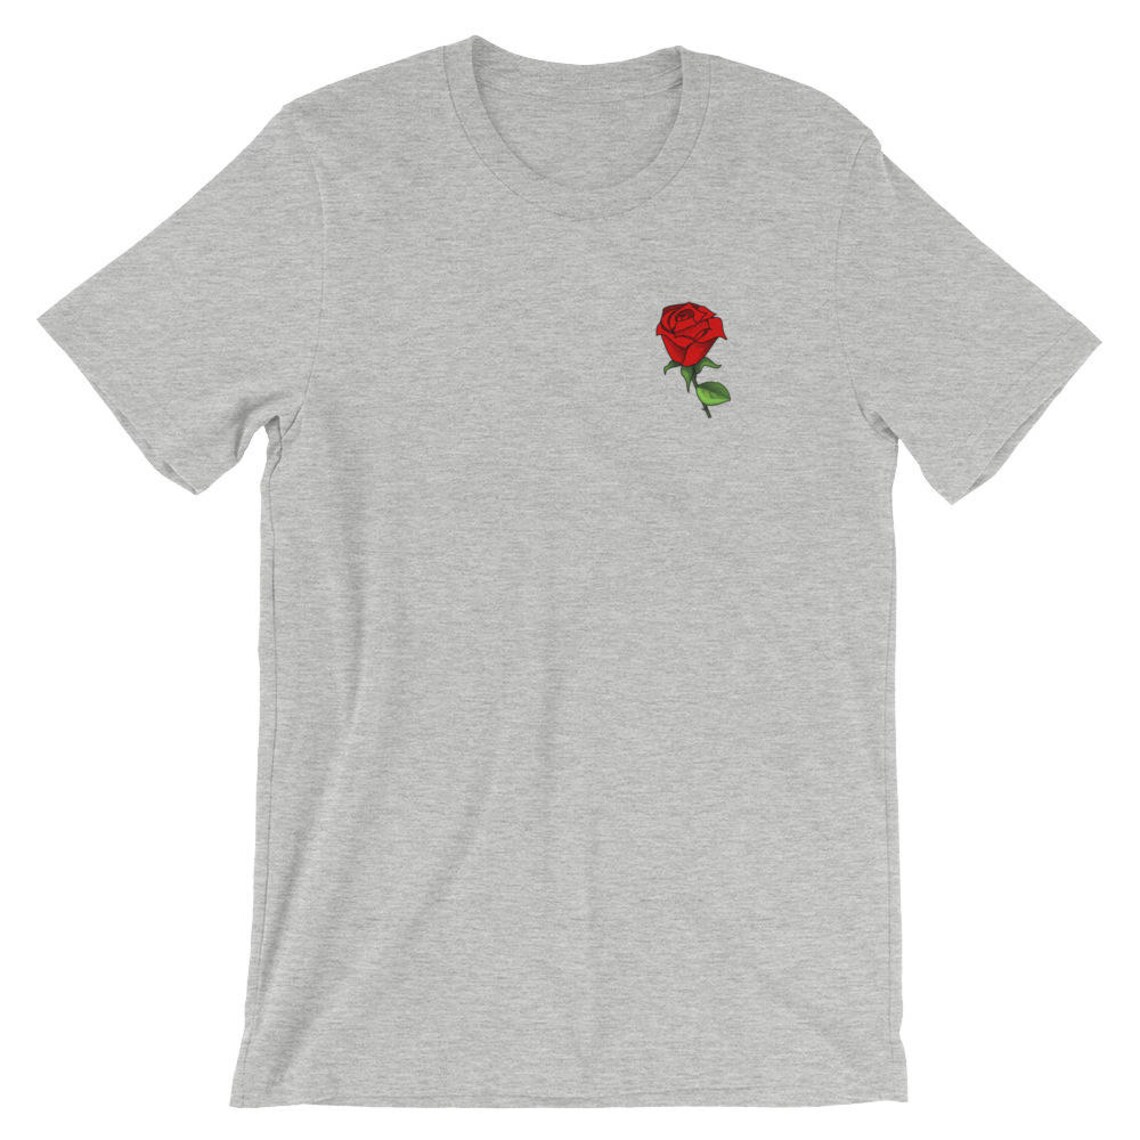 Rose Pocket Shirt Roses Shirt Flower Shirt Rose Tshirt | Etsy